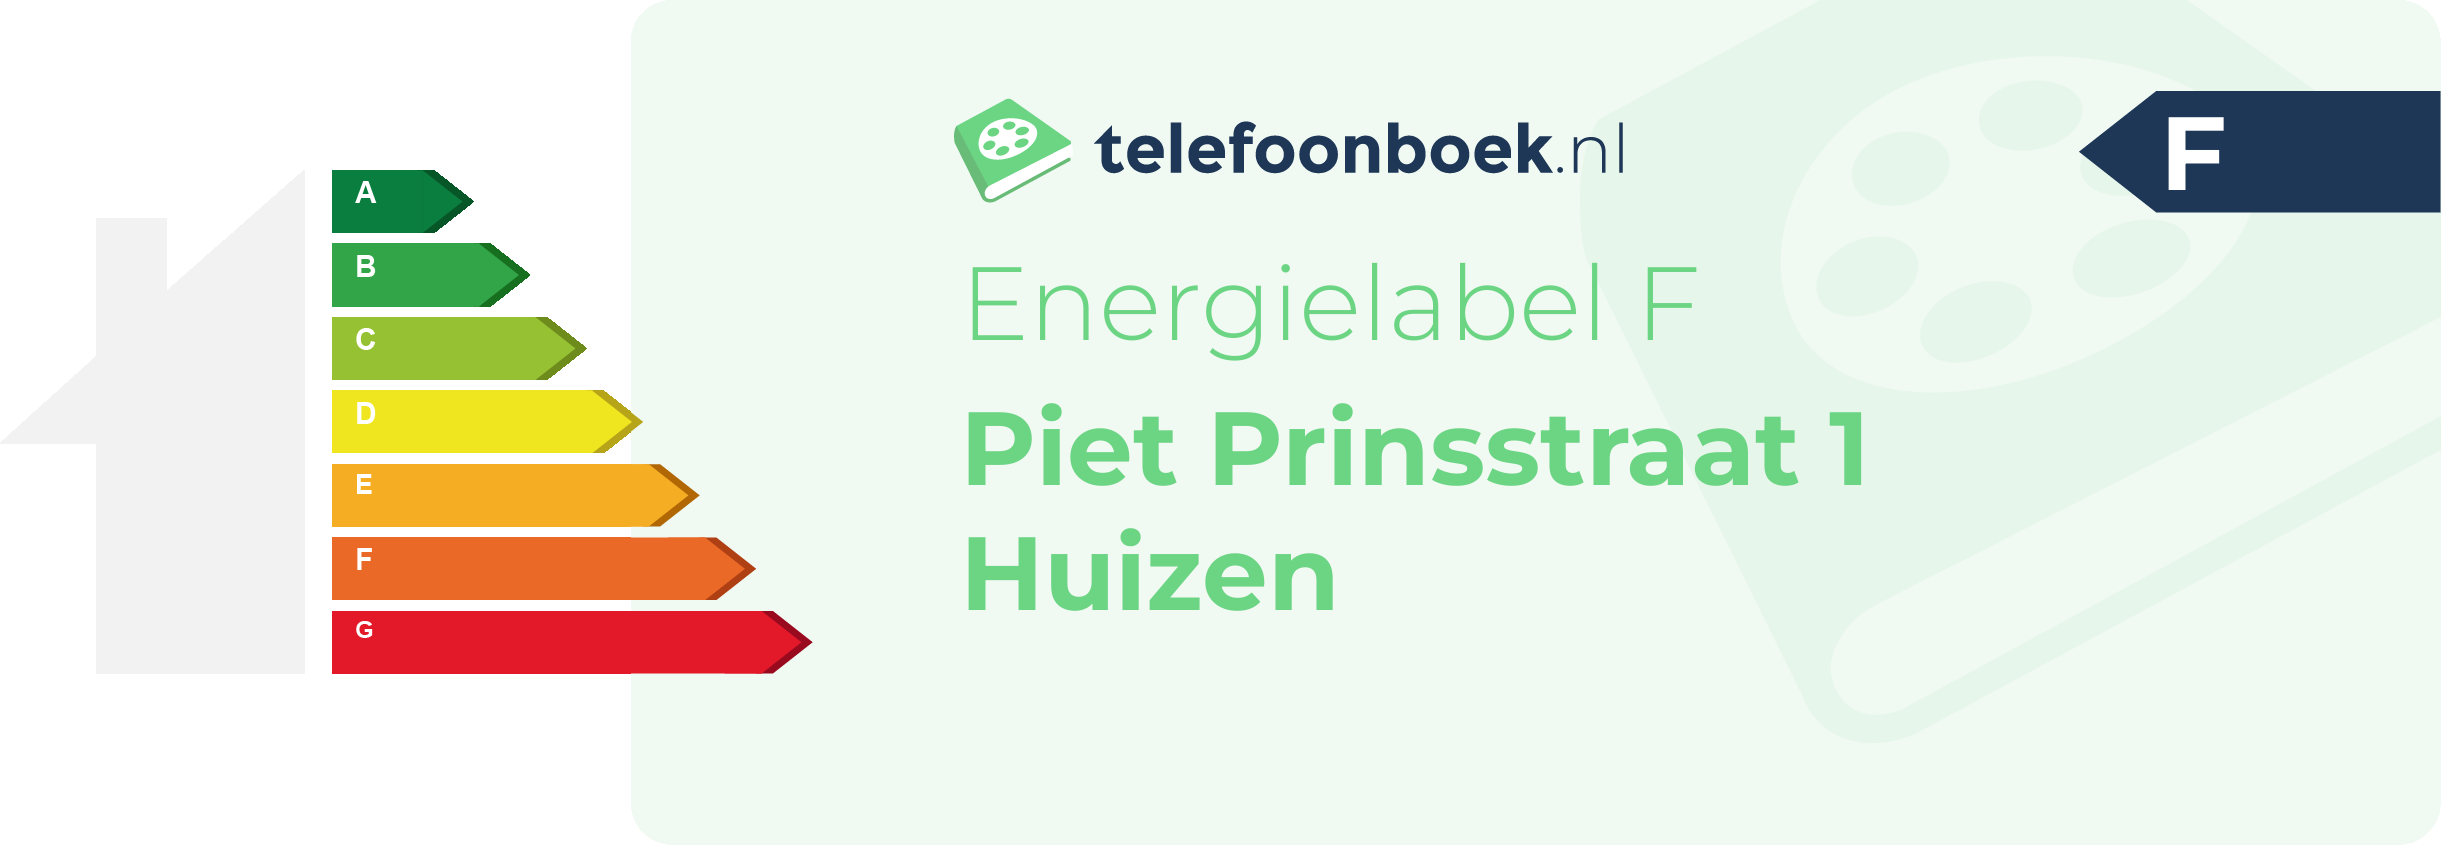 Energielabel Piet Prinsstraat 1 Huizen